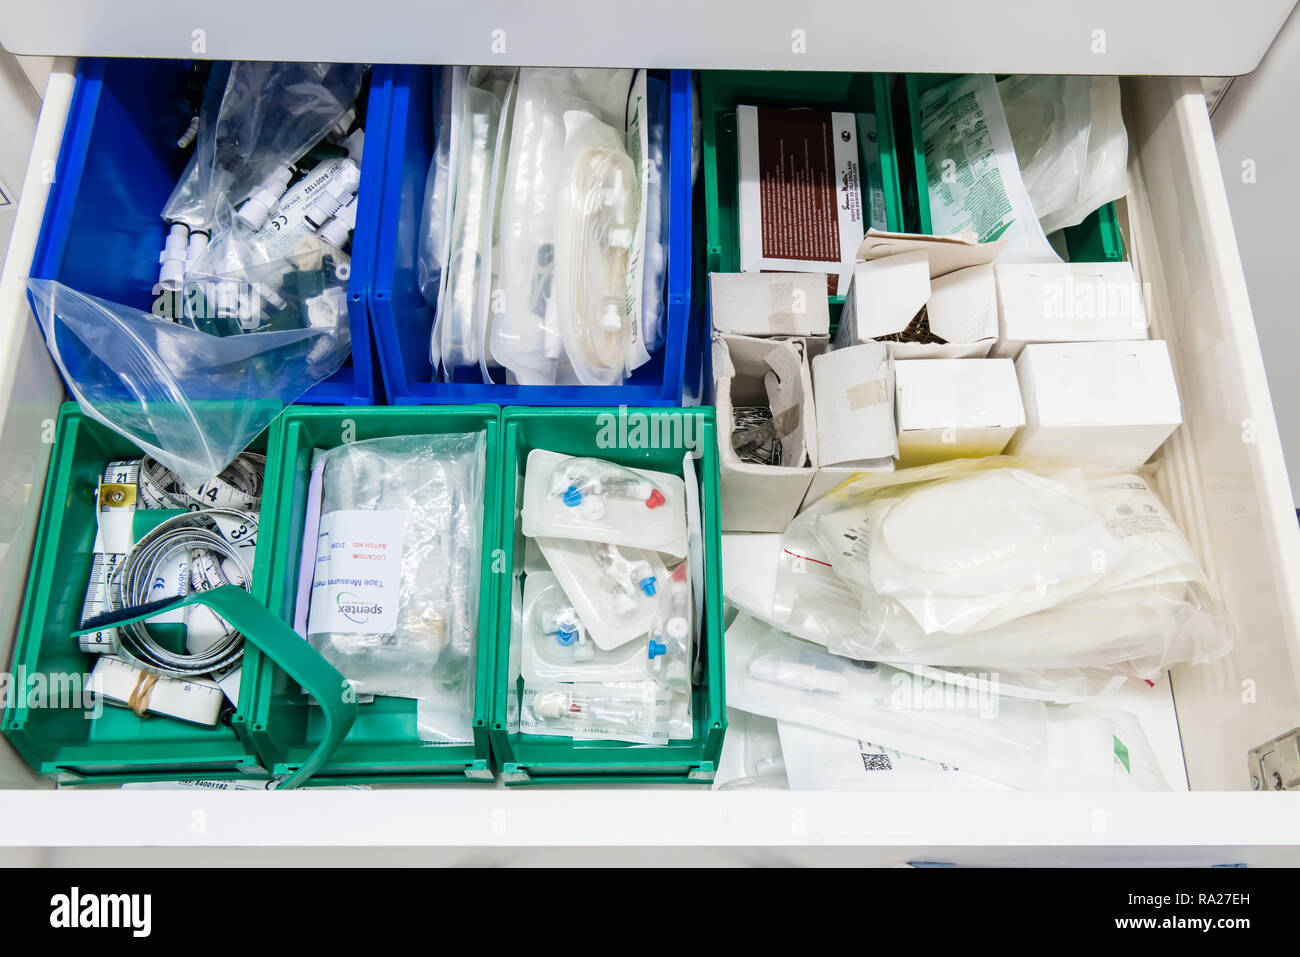 Cajón sala de tratamiento en un hospital con equipos tales como dar conjuntos, cánulas, almohadillas, y medidas de cinta Foto de stock